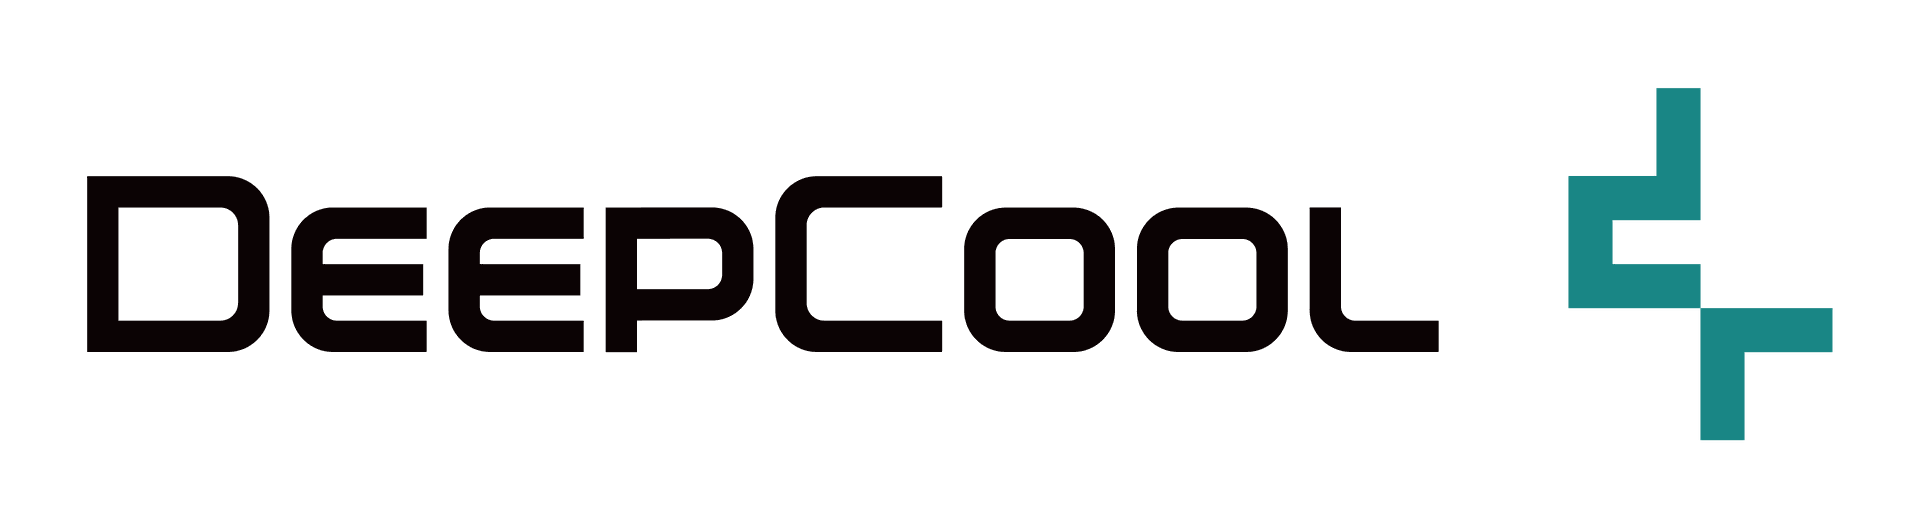 Brand: Deepcool